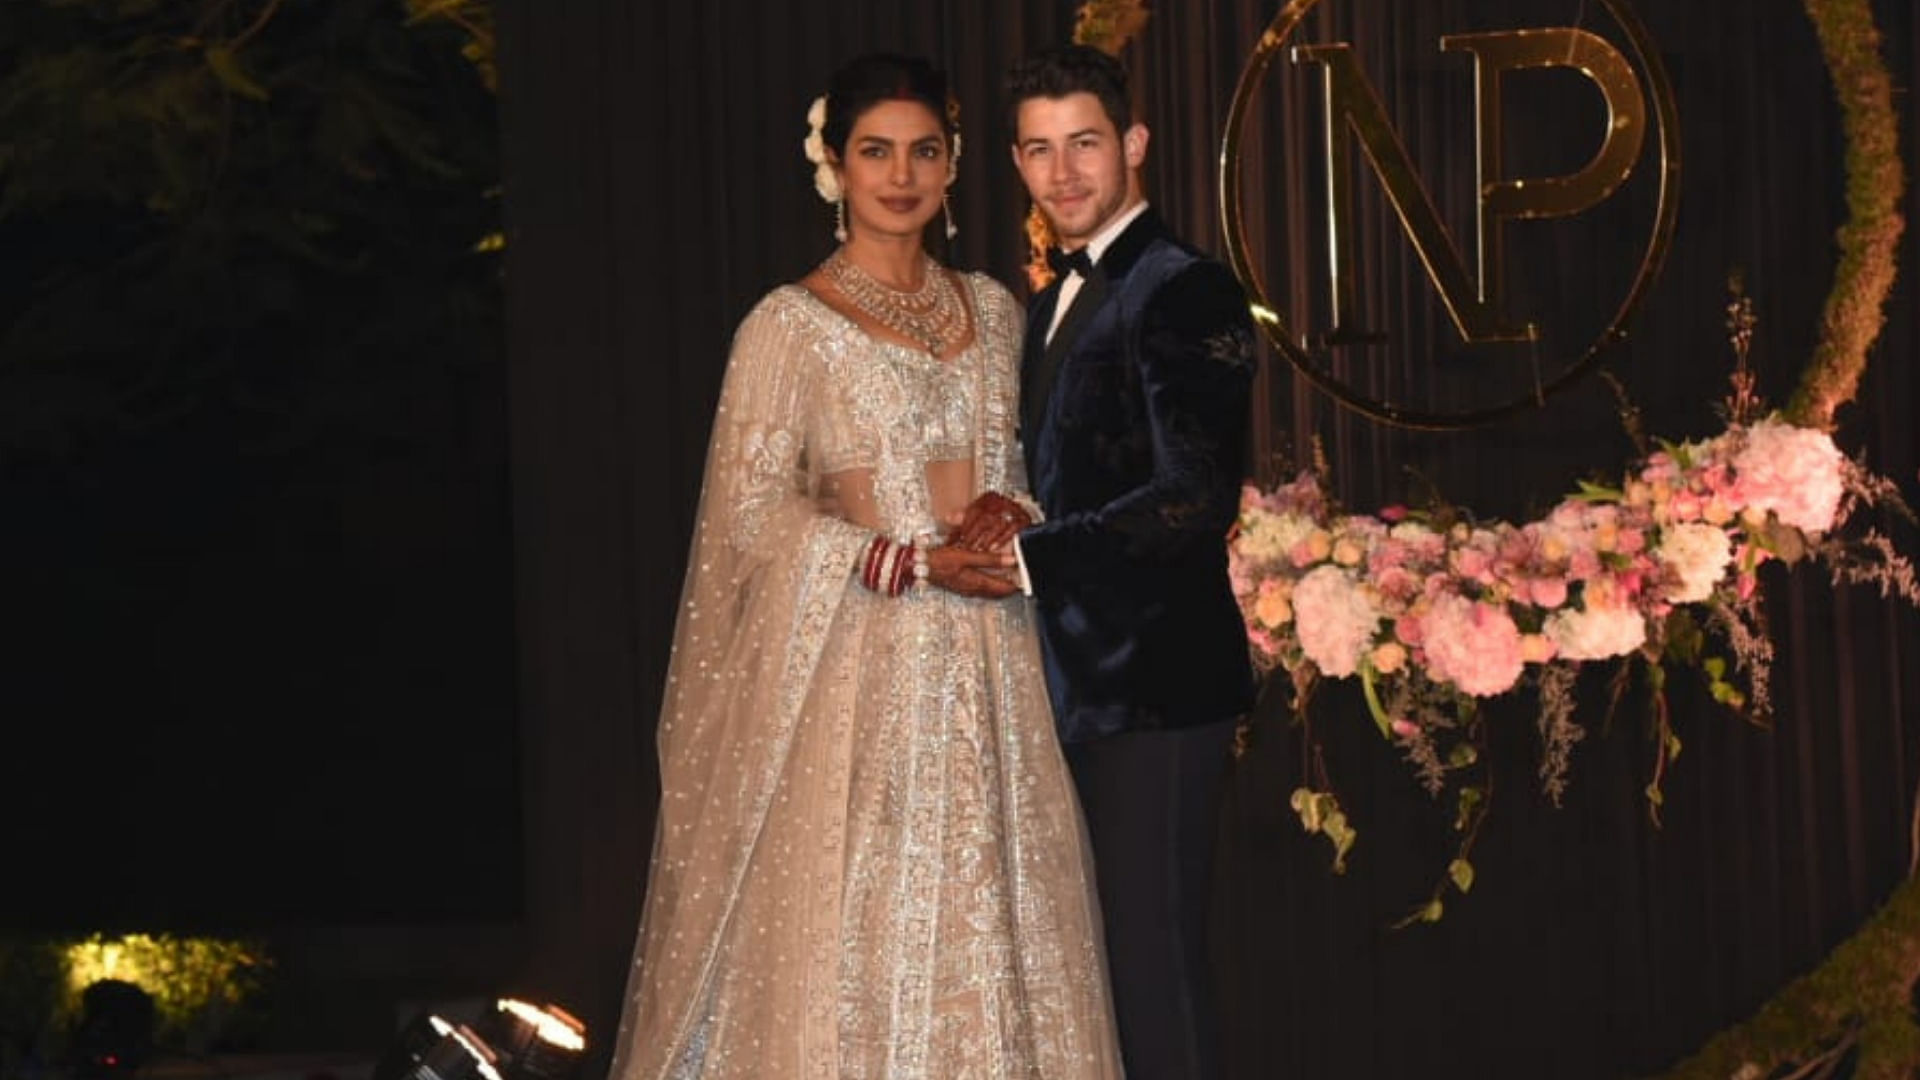 Priyanka Chopra and Nick Jonas at their wedding reception in Delhi.